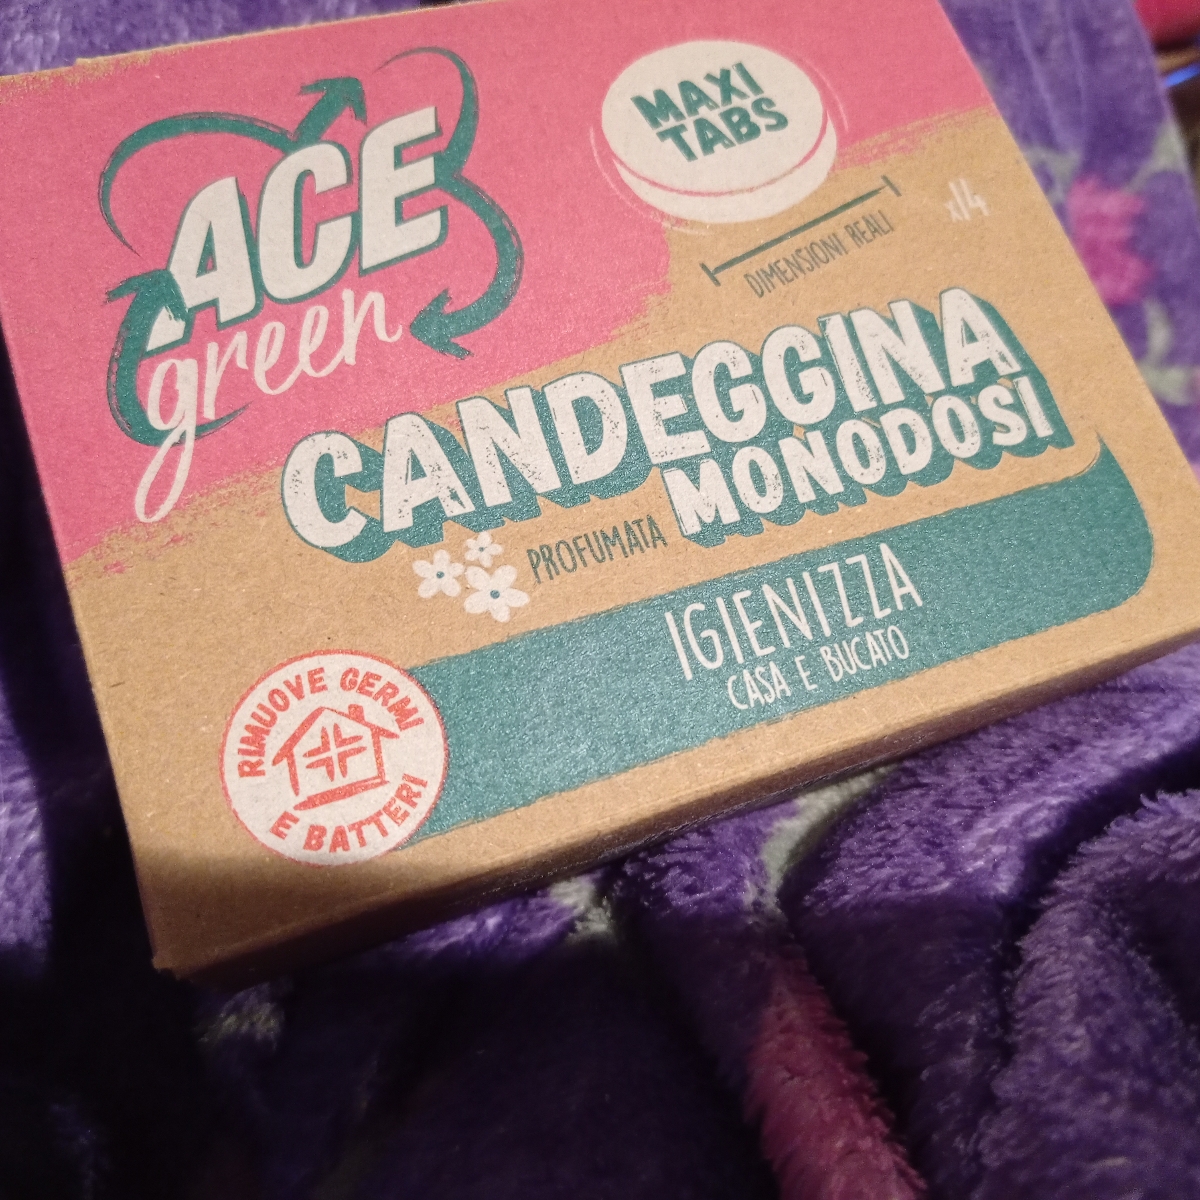 Ace green Candeggina Zero Plastica Reviews | abillion